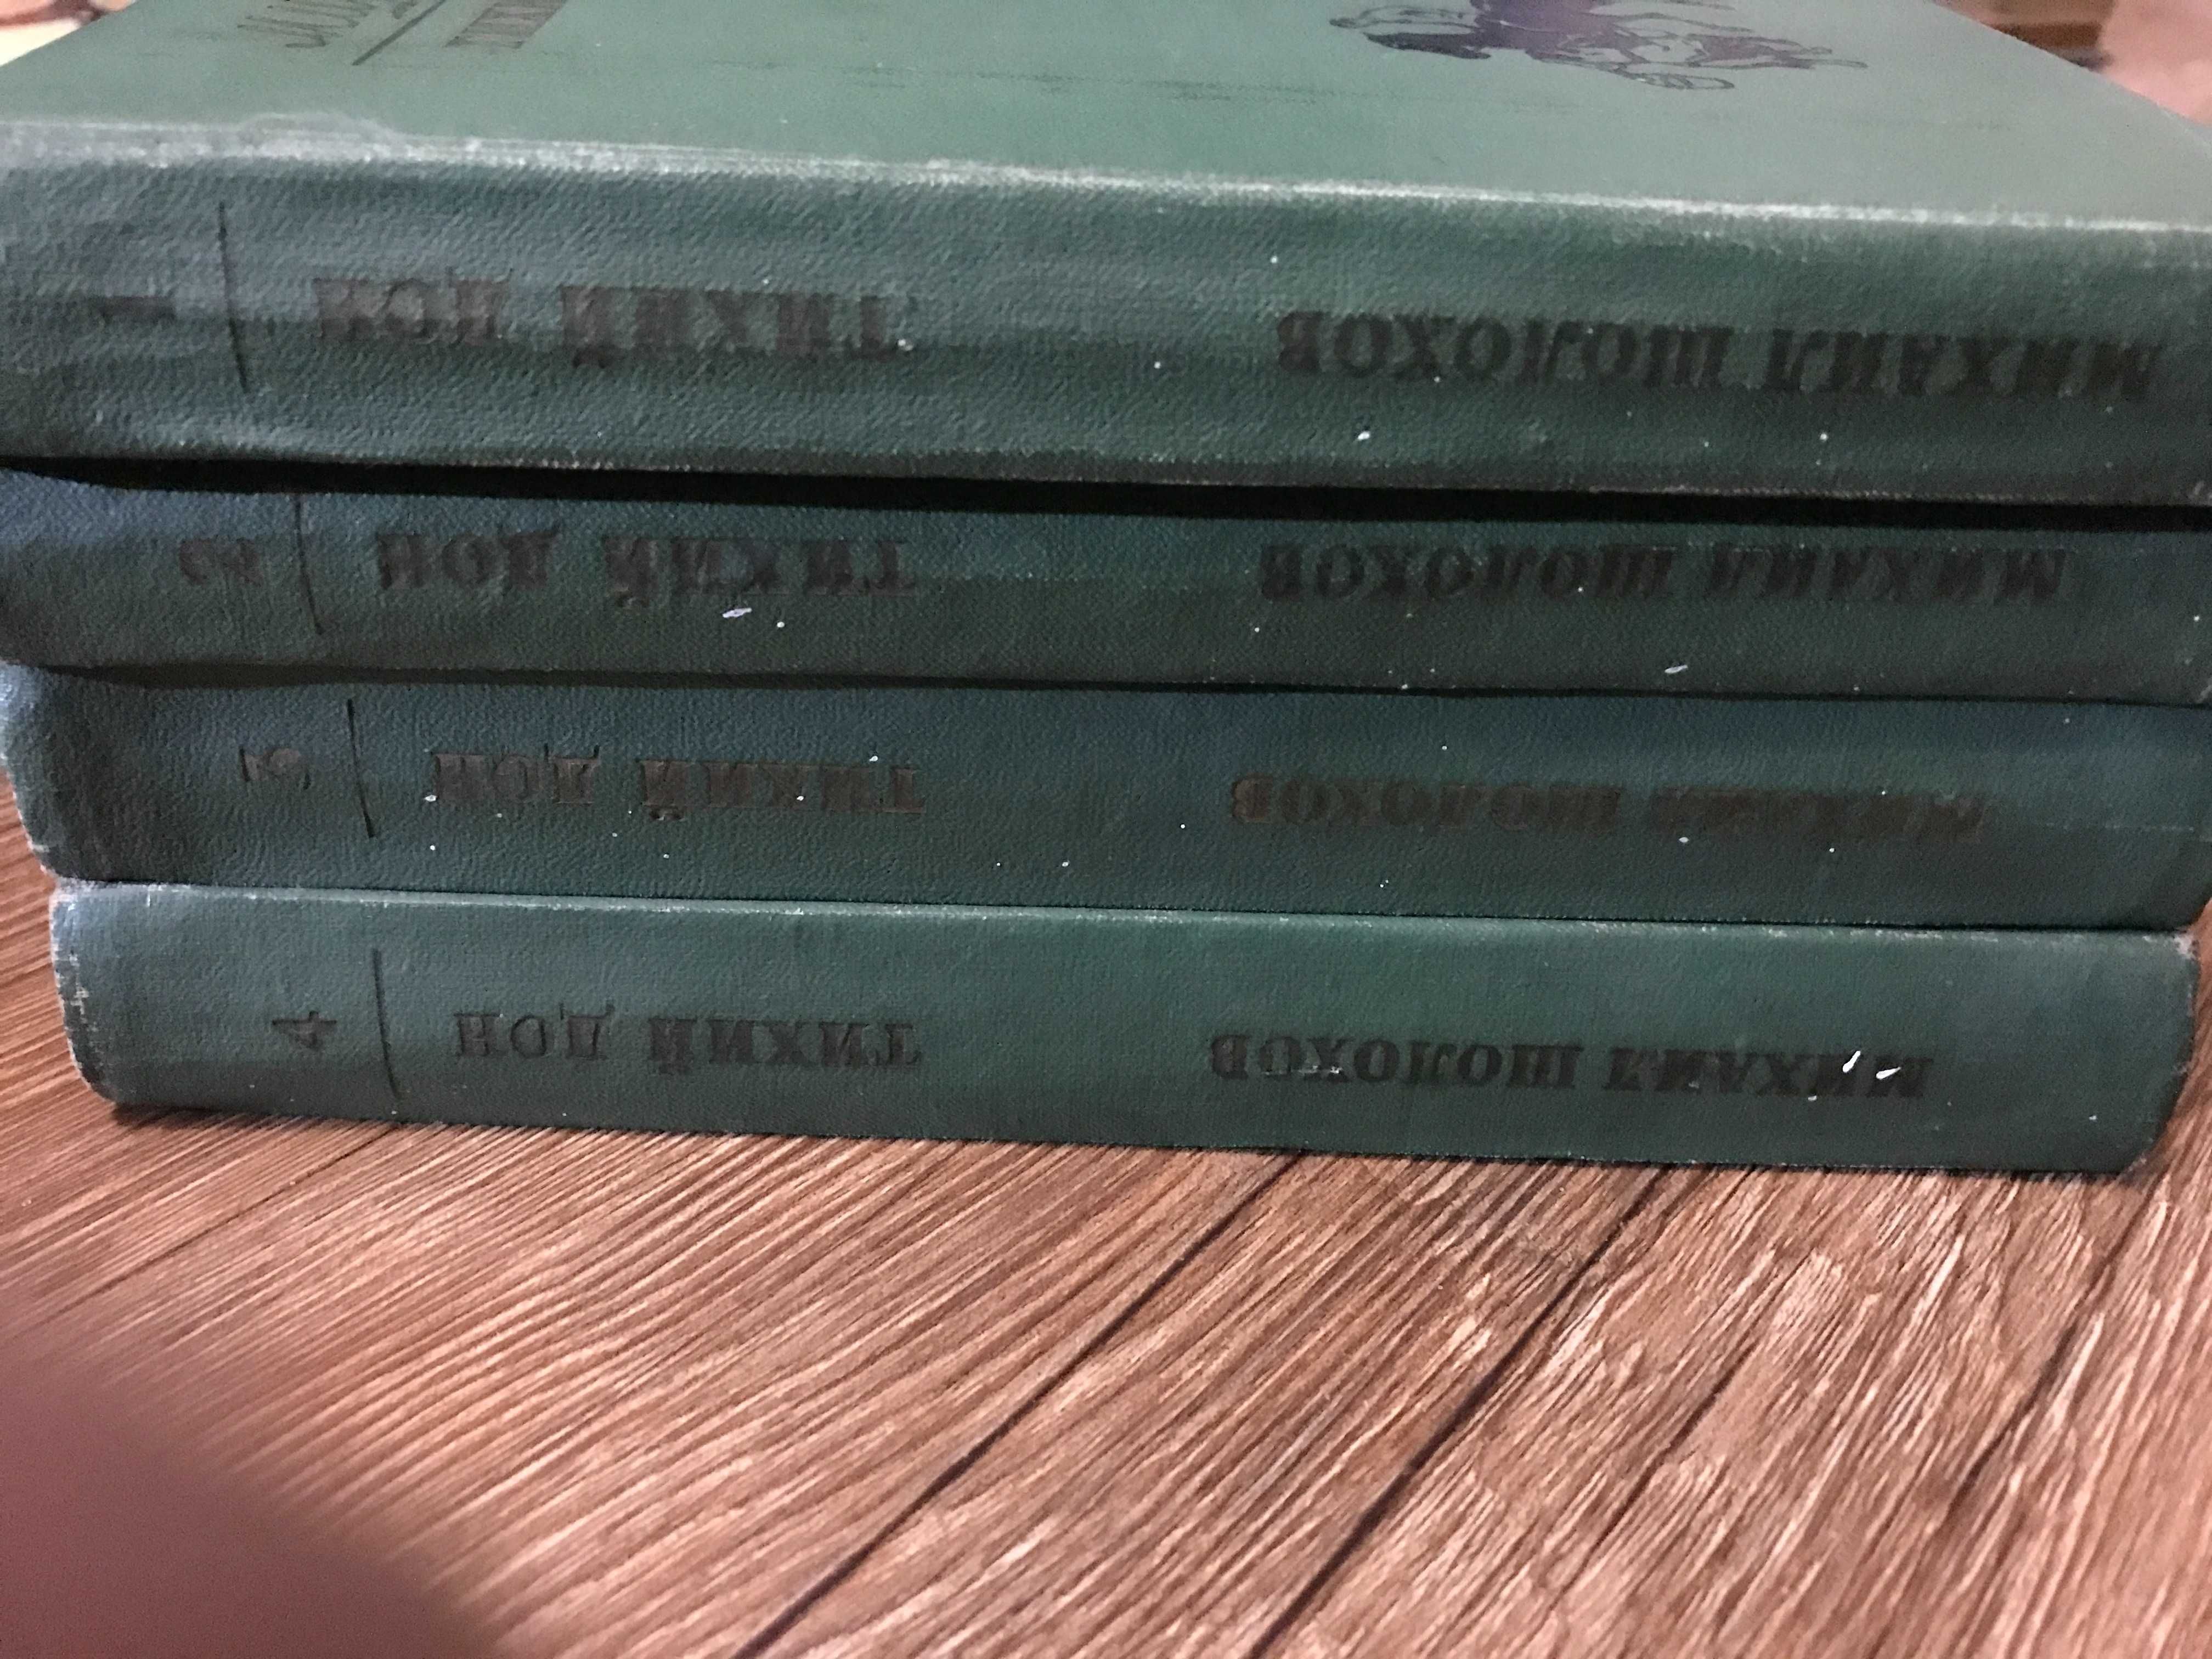 Книги  советские